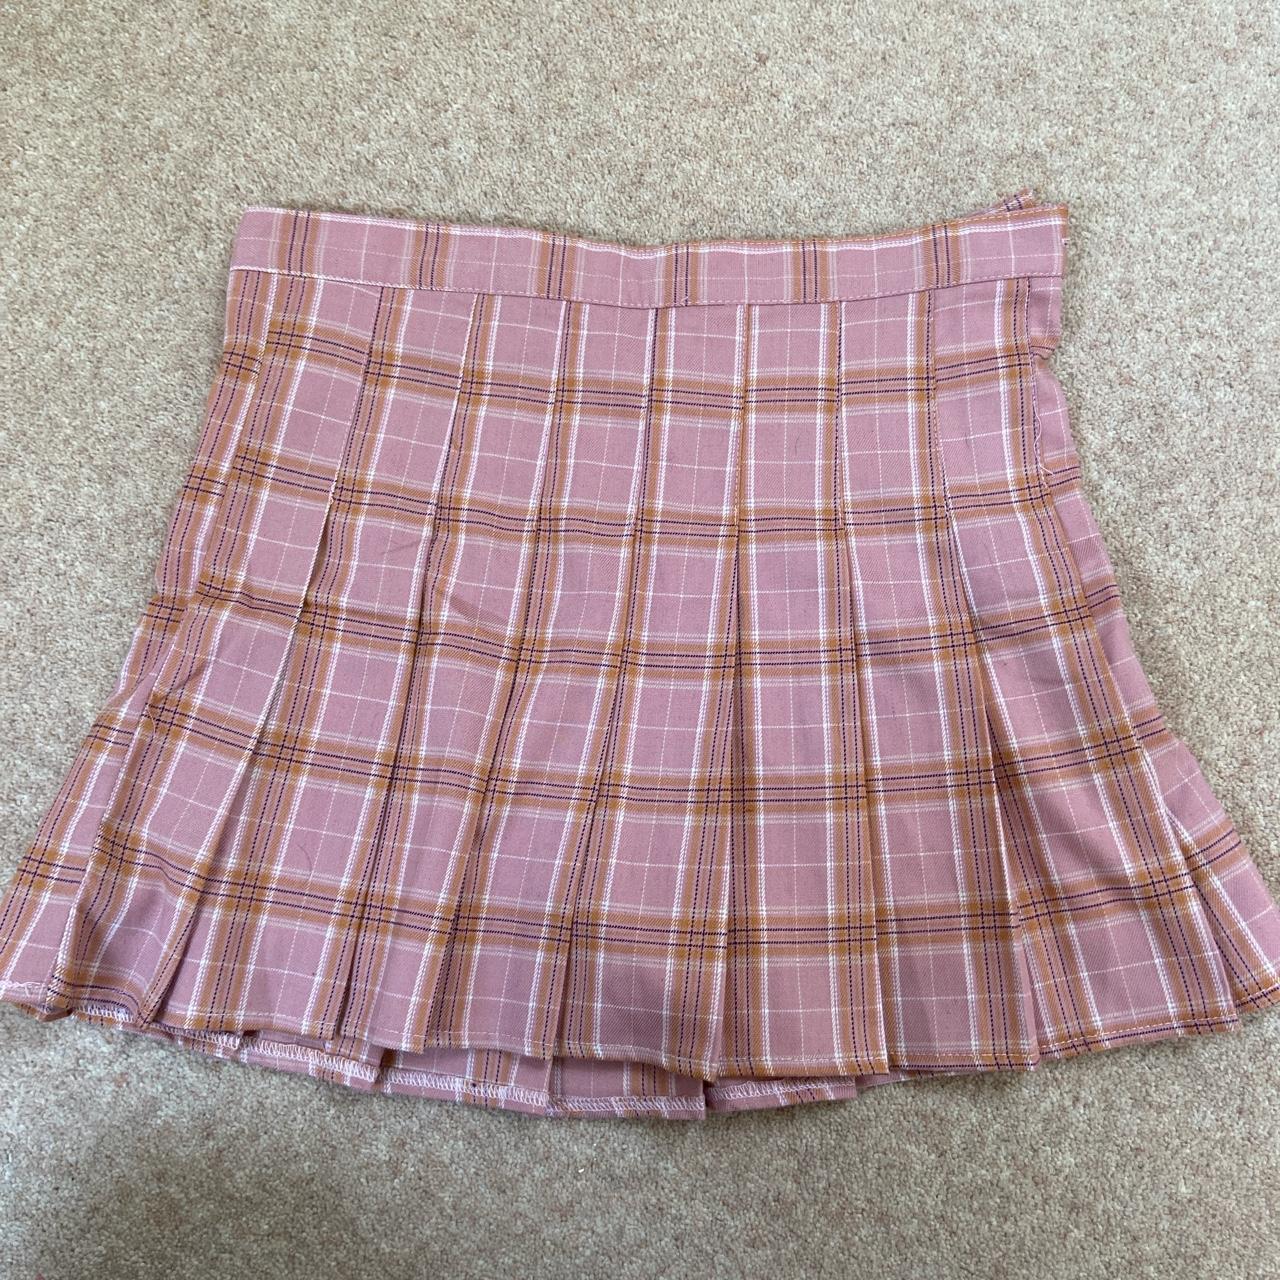 - Pink tartan miniskirt - Built in shorts - Zip &... - Depop